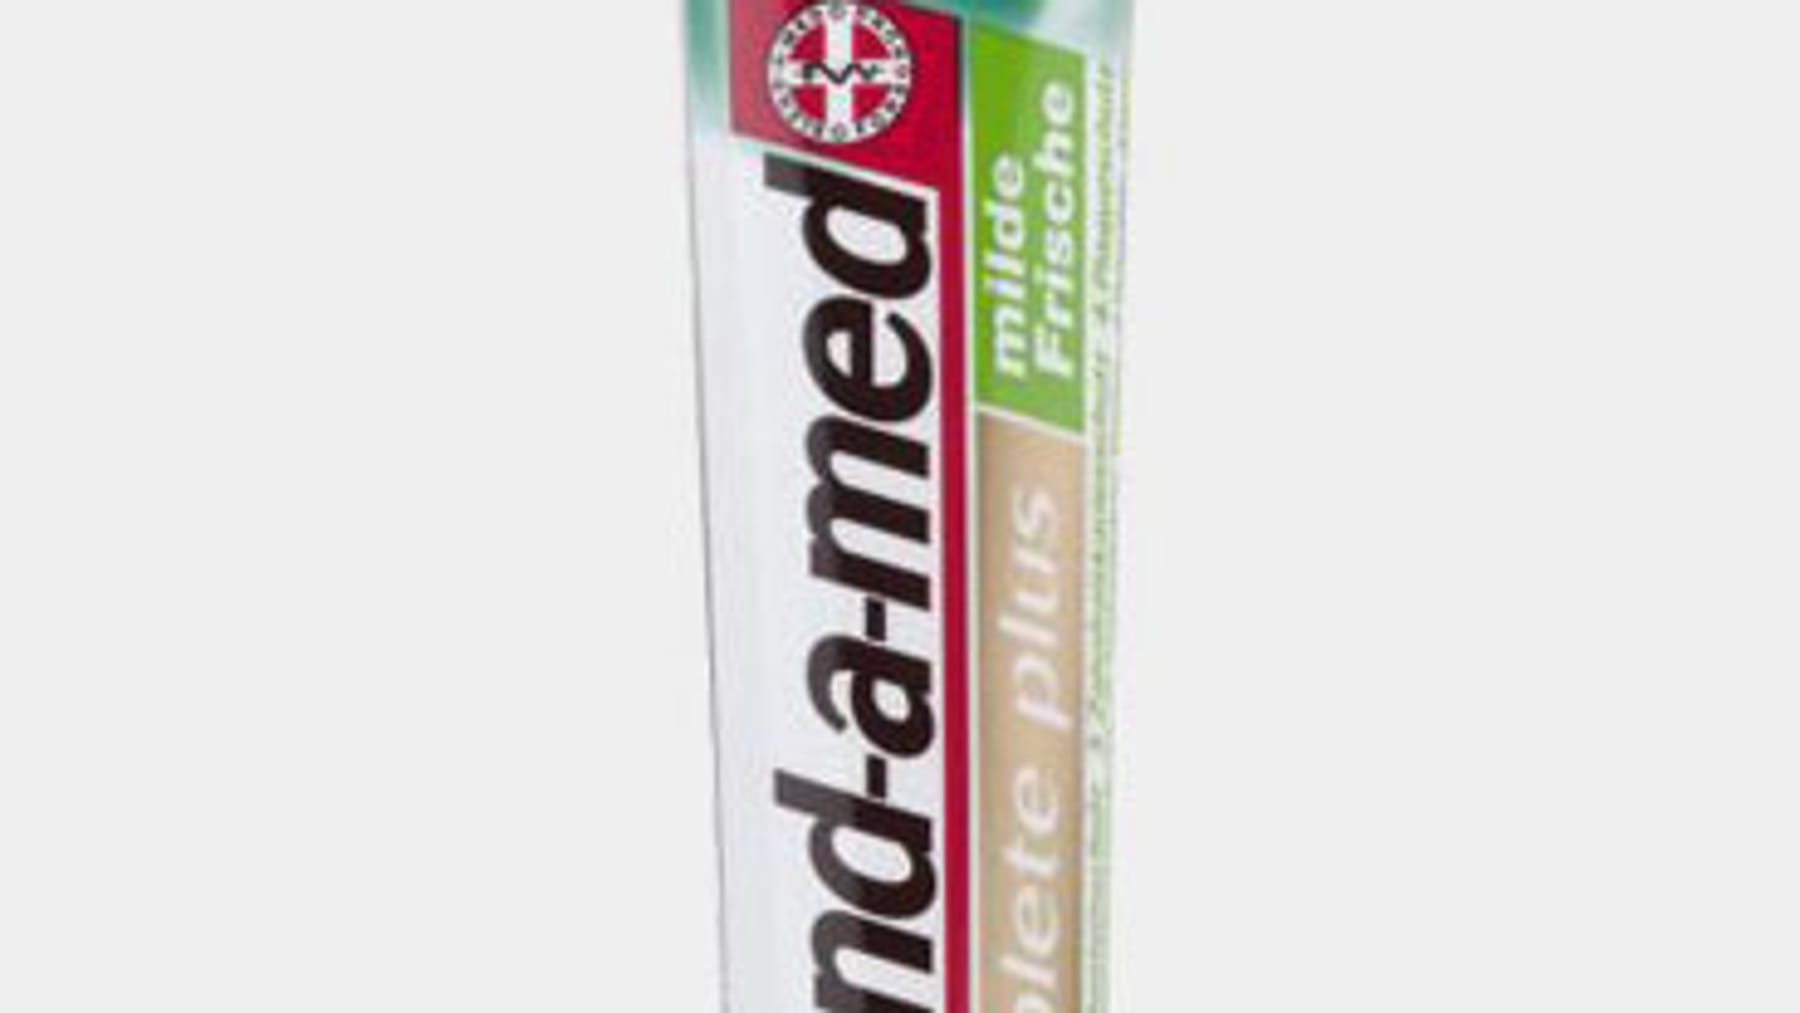 Theramed Complete Plus - Zahnpasta im Spender für umfassende Mundhygiene